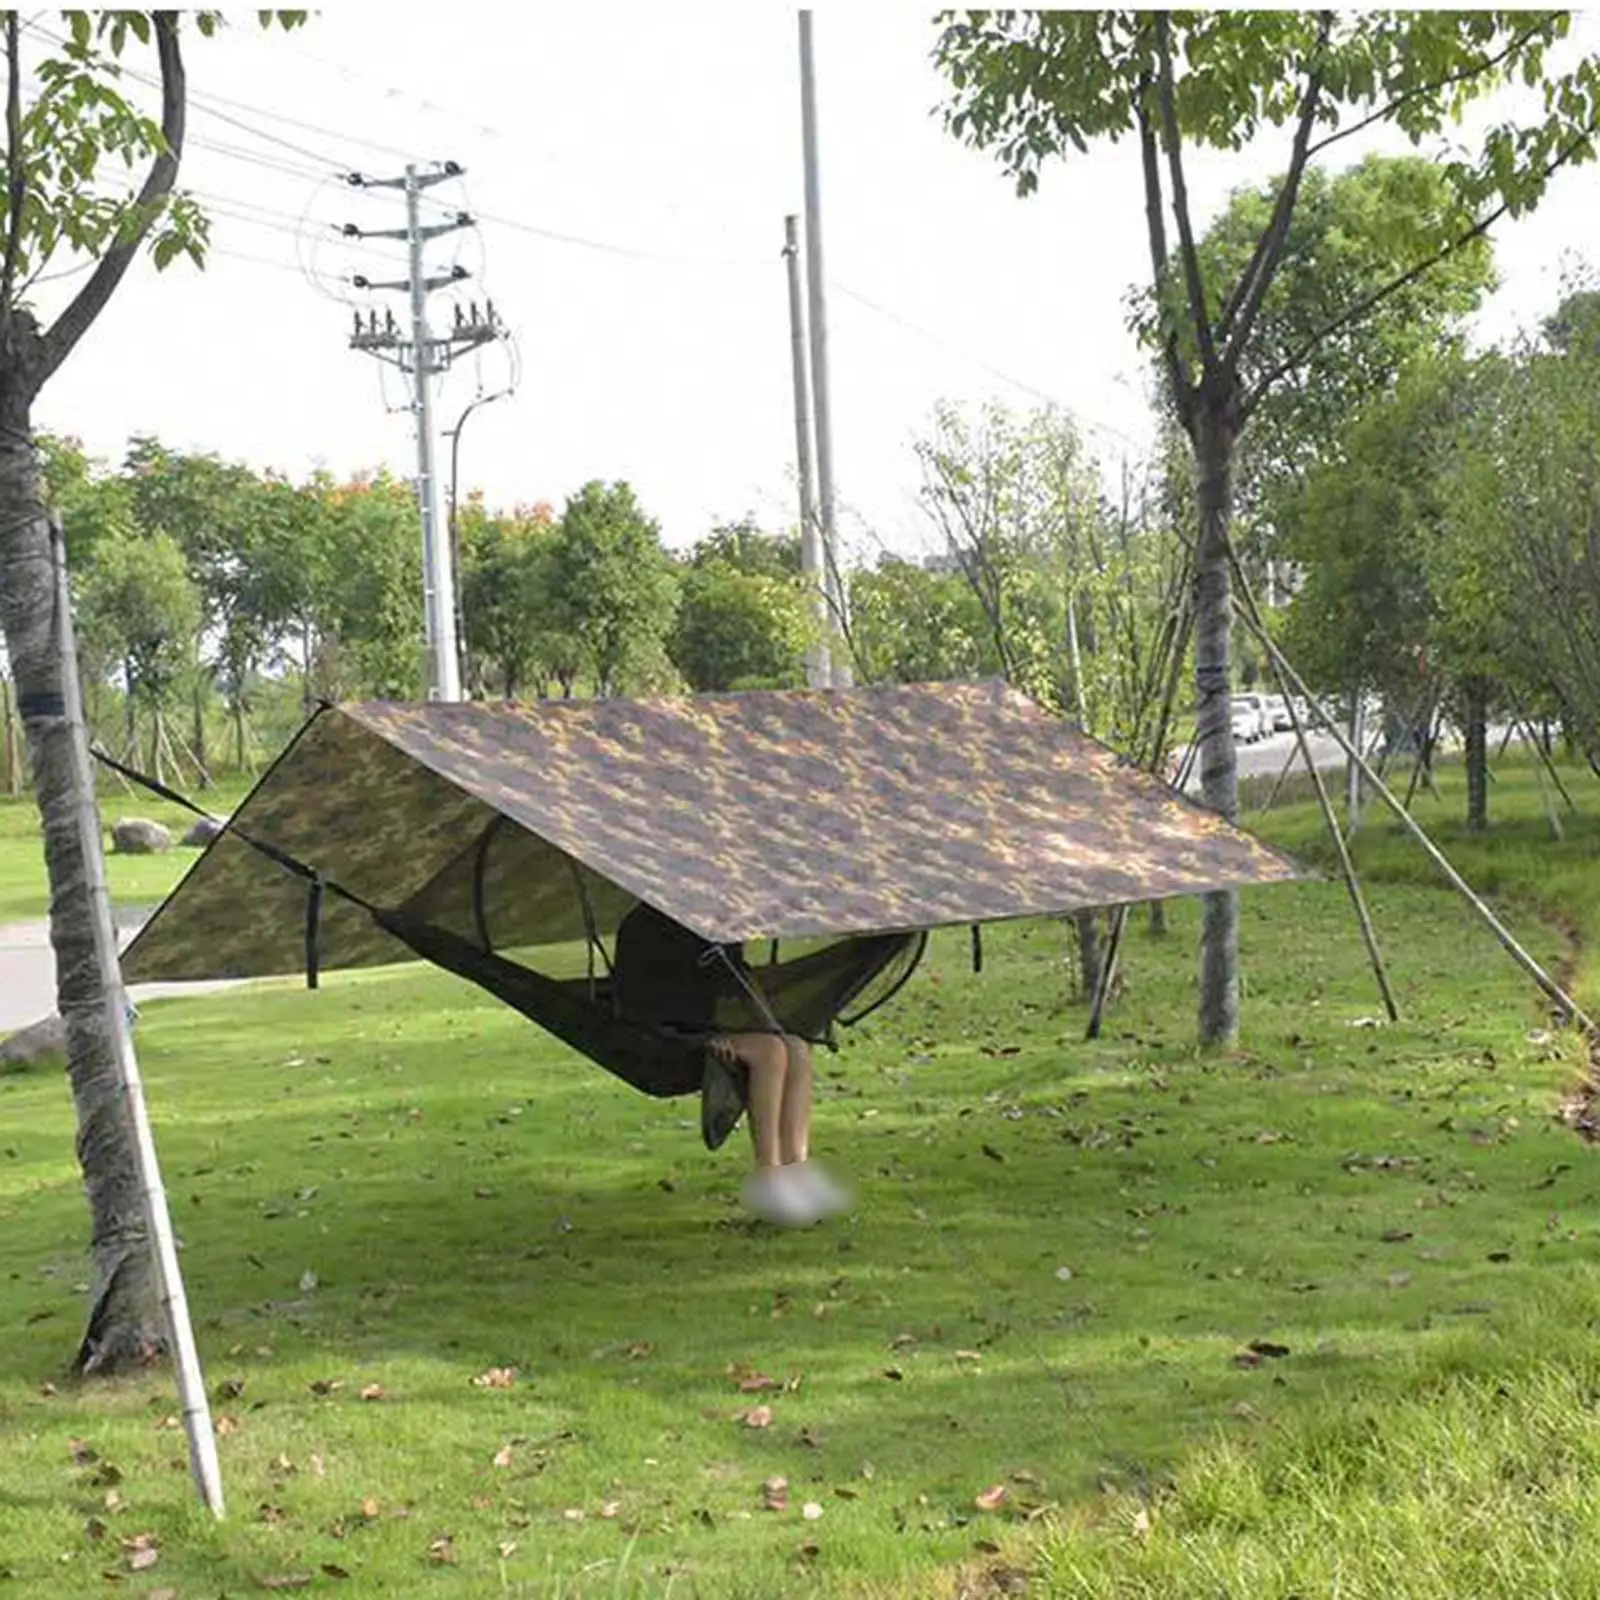 Portable Camping Tent Tarp Sun Shelter Hammock Rain Fly Picnic Mat Hanging Sun Shade for Backyard Canopy Survival Garden Yard